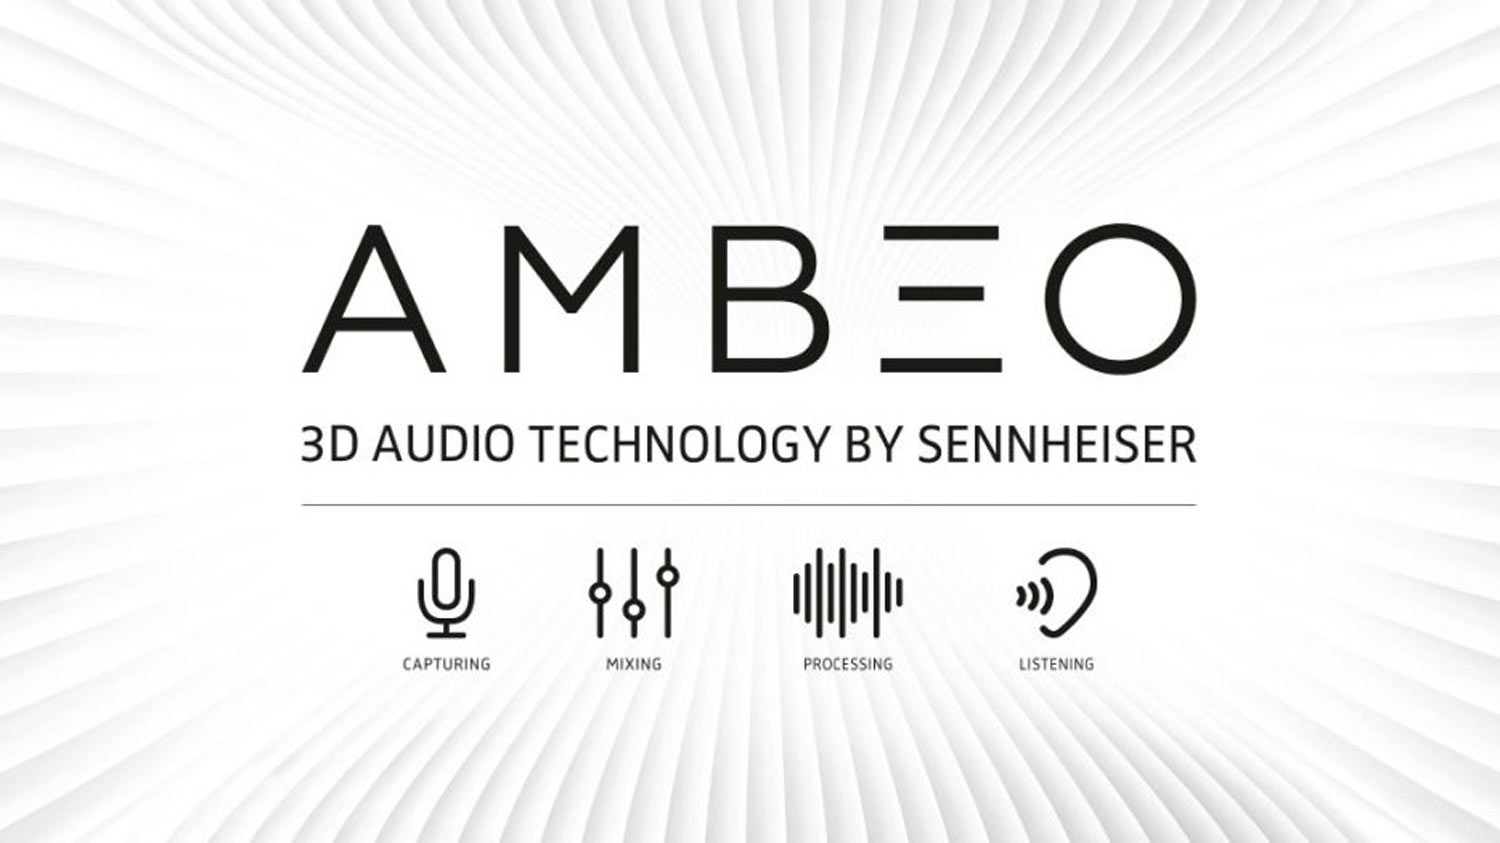 Sennheiser Bekerjasama Dengan Samsung Untuk Menghasilkan Fon Telinga Menyokong Audio 3D